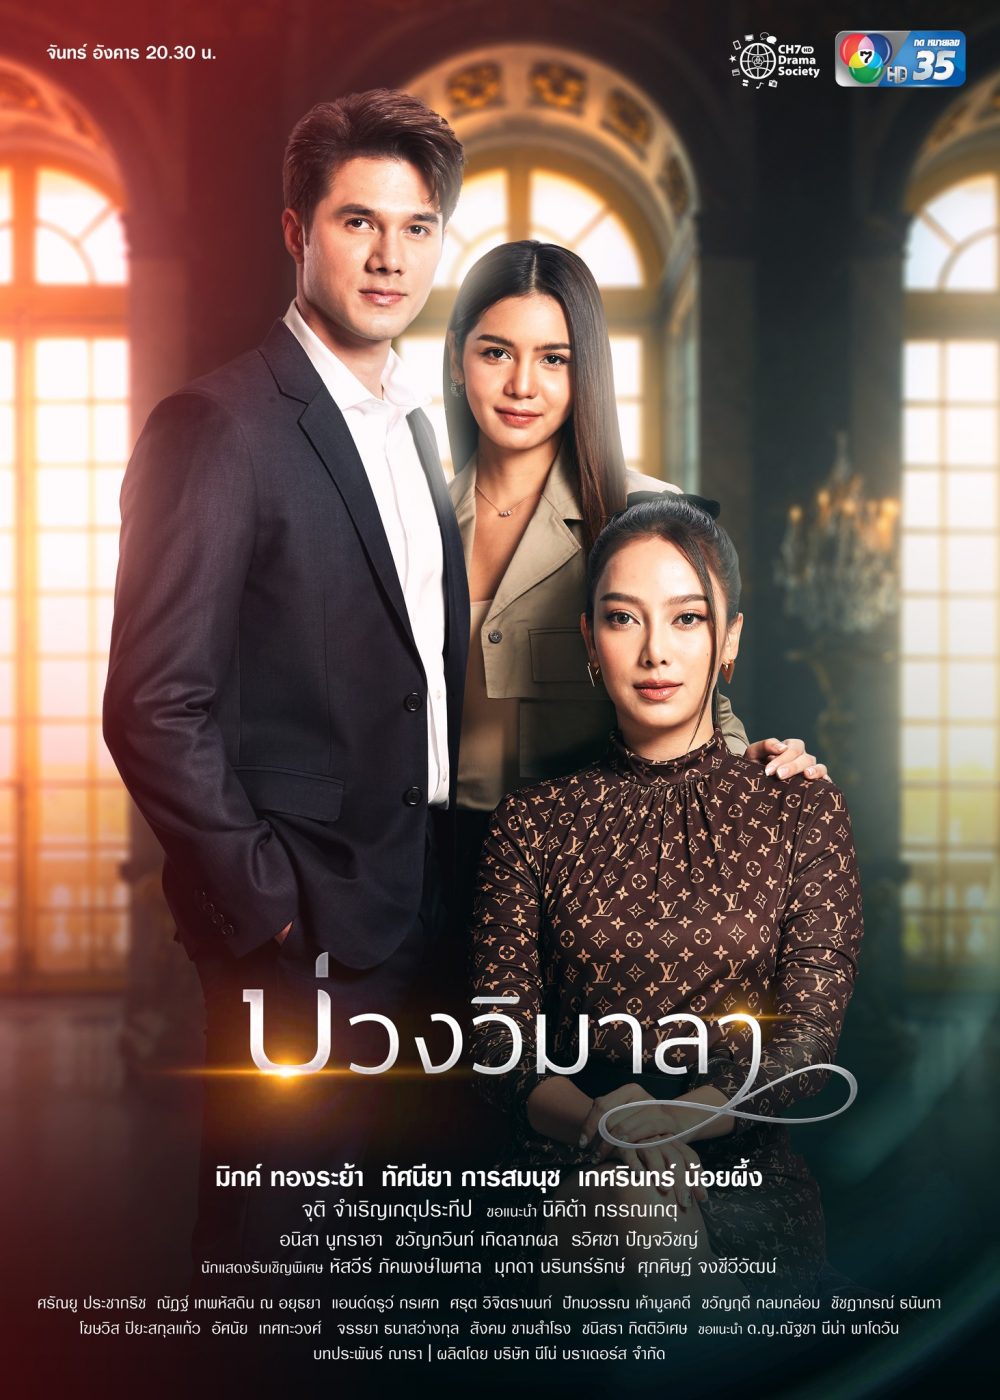 Phim Thái Lan cưới trước yêu thương sau: Cô dâu kín đáo của tôi - My Secret Bride (2019)